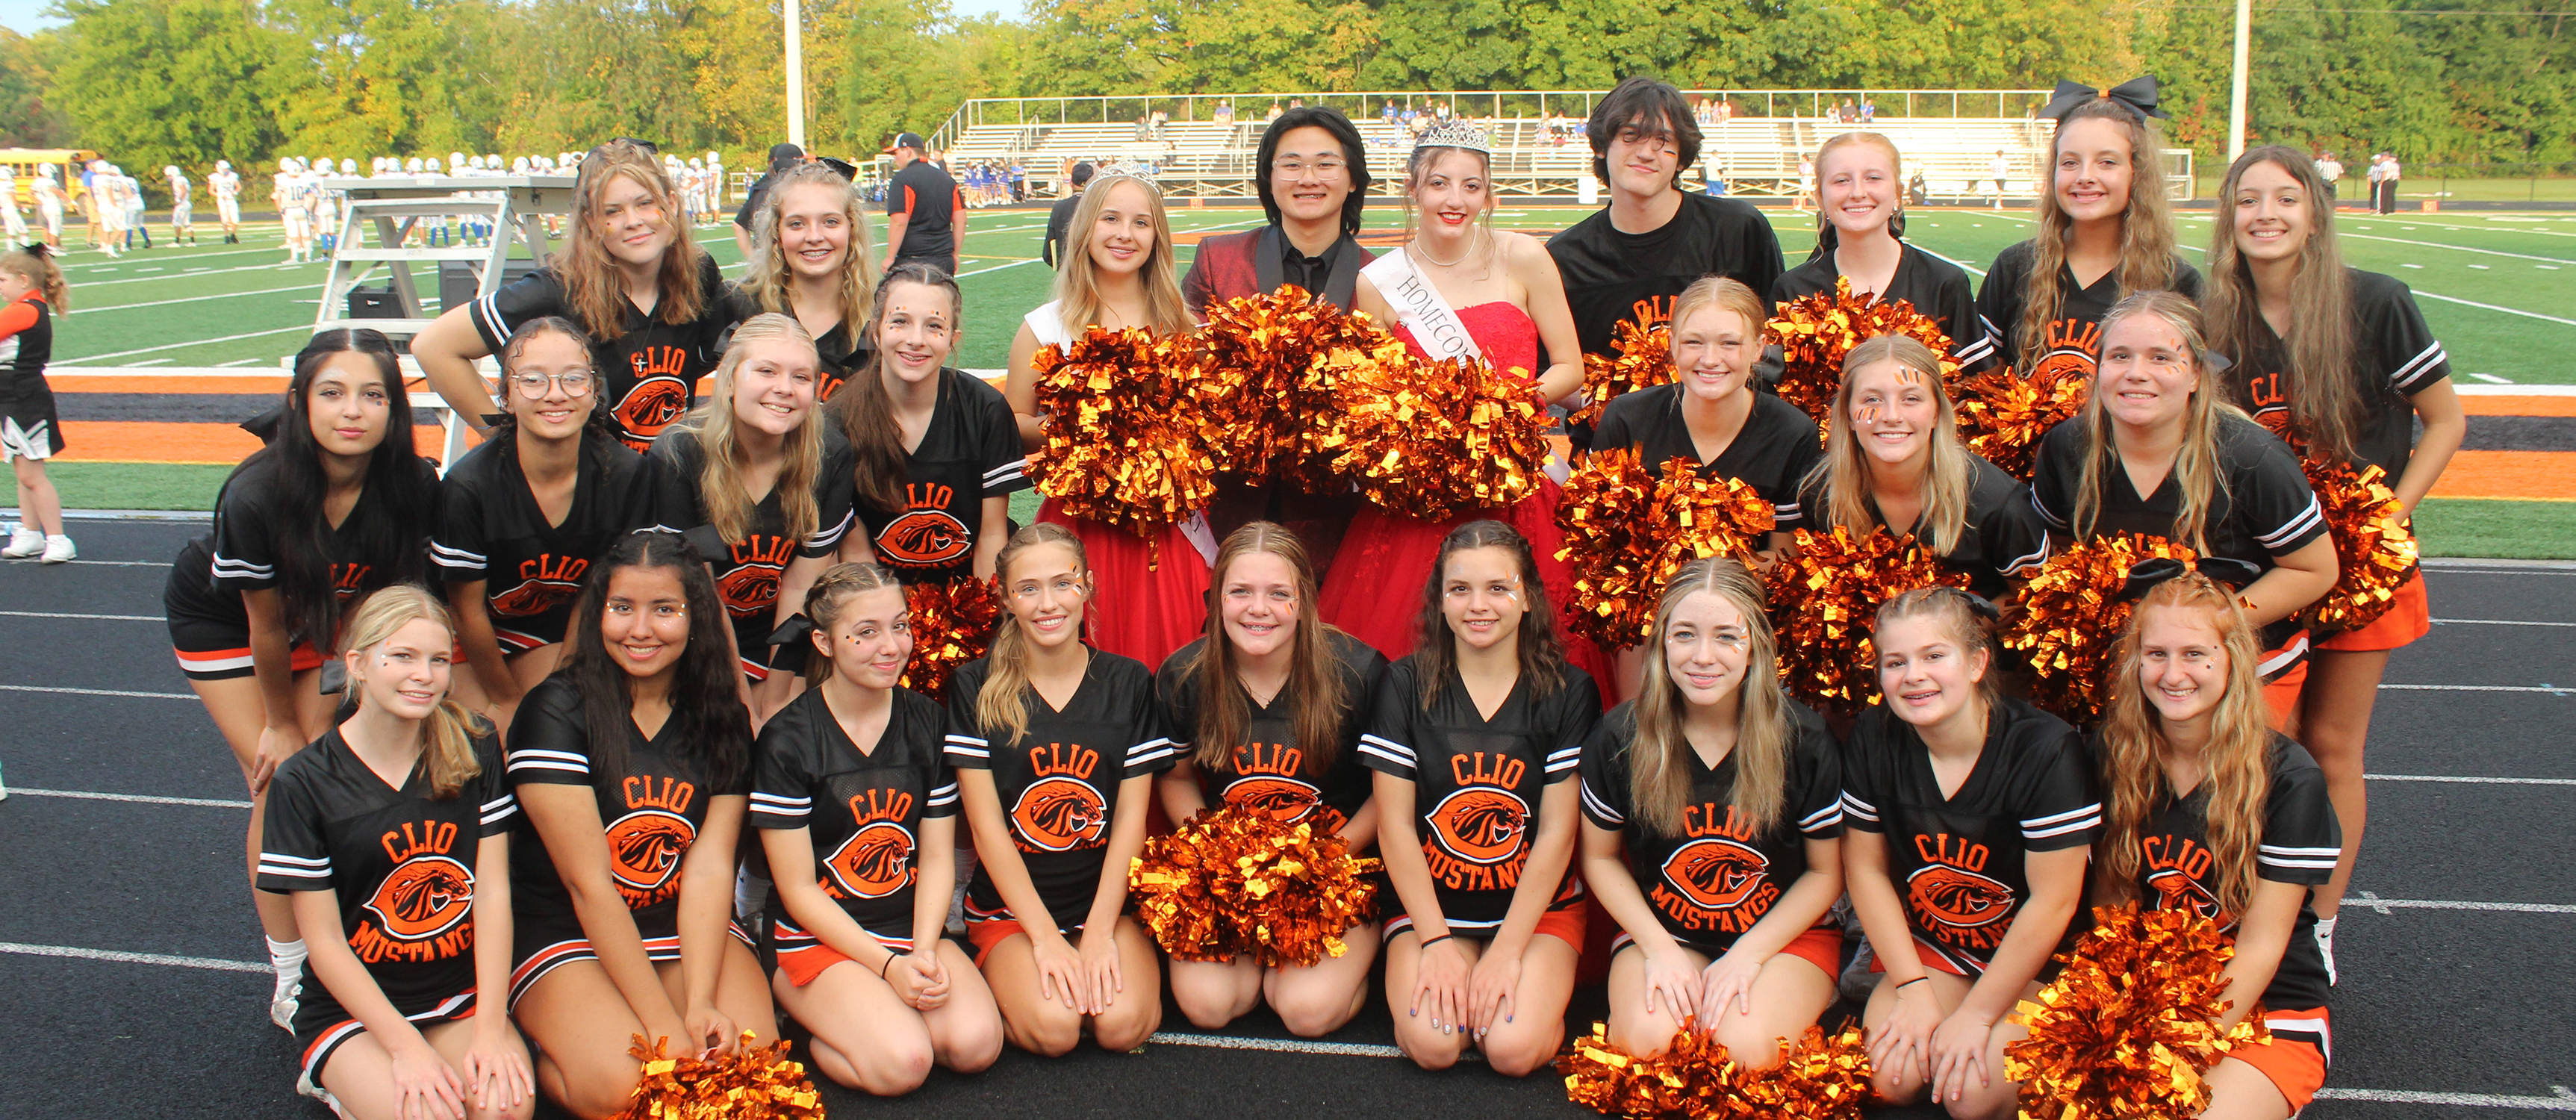 Photo of varsity cheerleaders posing as a group